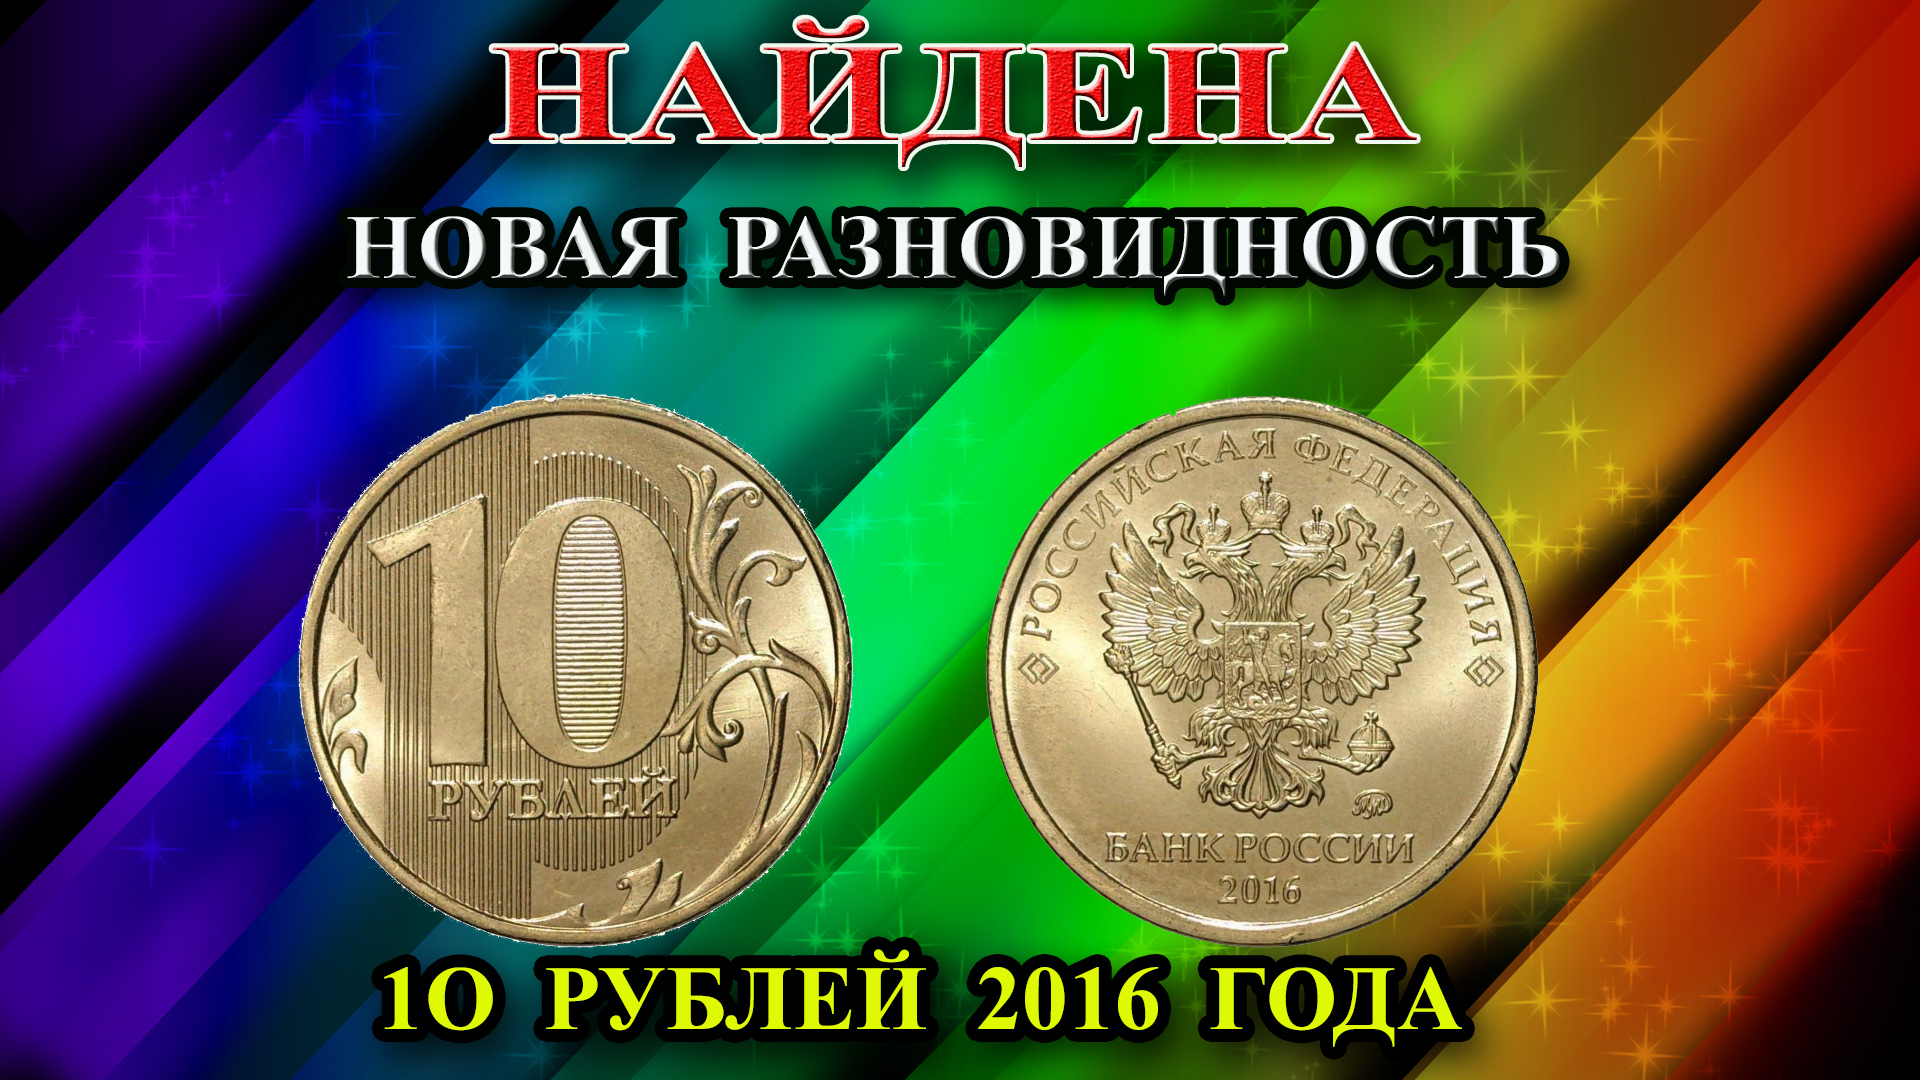 Найдена новая уникальная разновидность 10 рублей 2016 года! Ее отличия. Пишите нам у кого она есть!